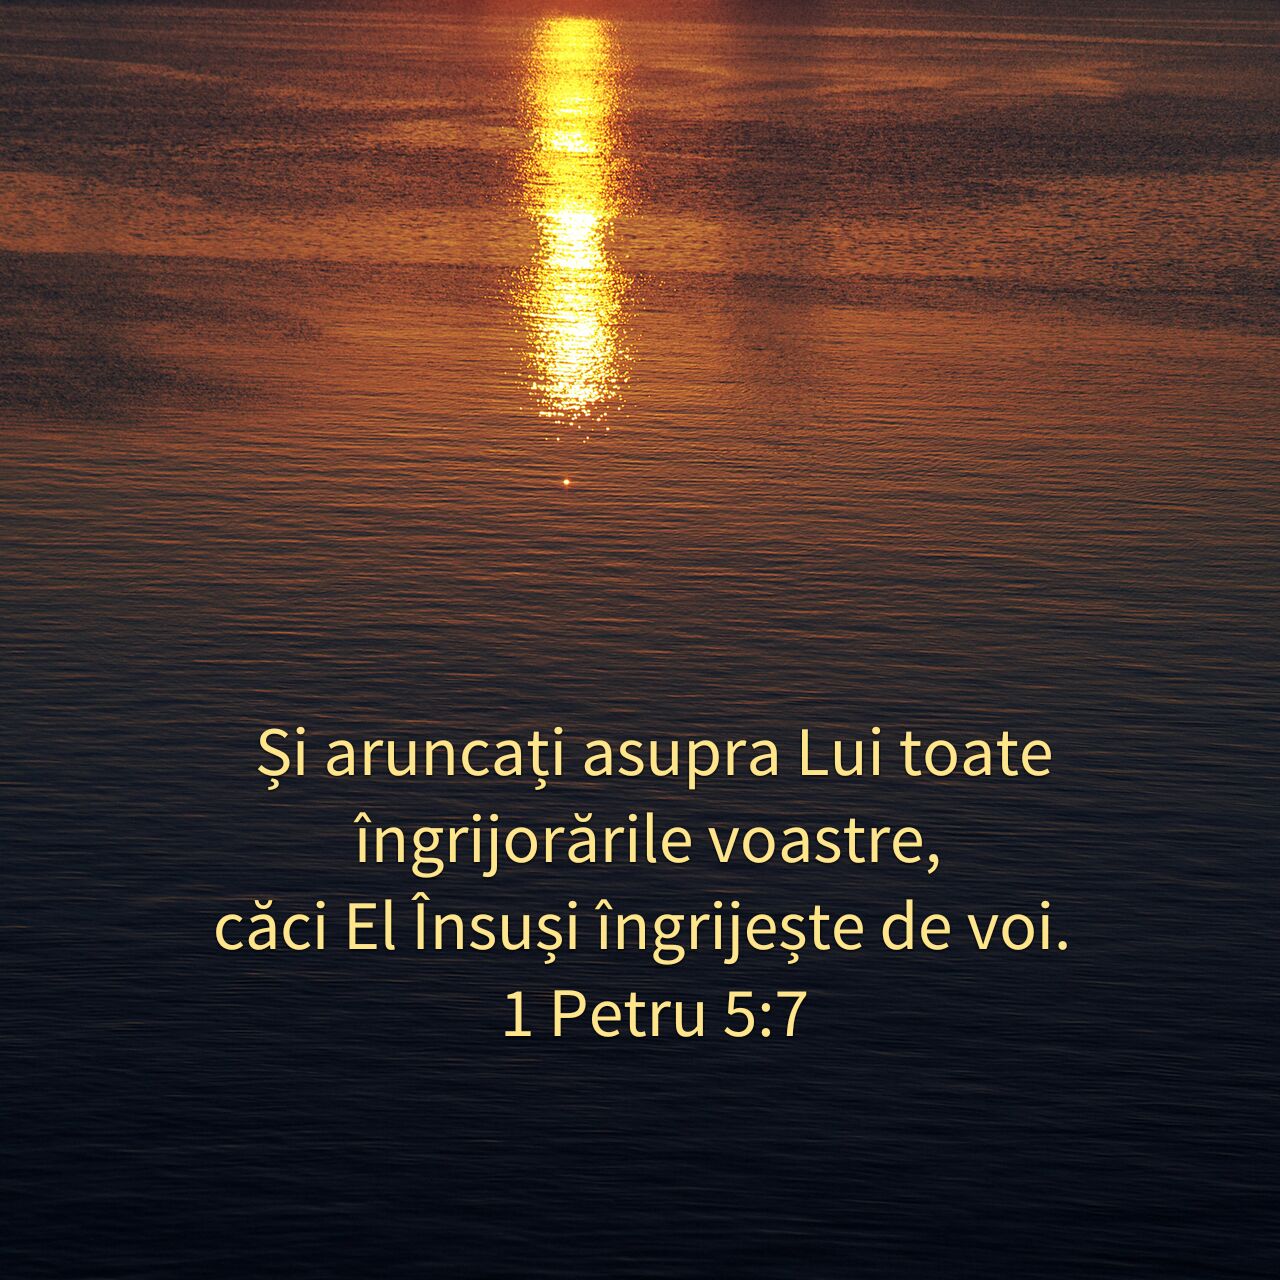 1 Petru 5:7